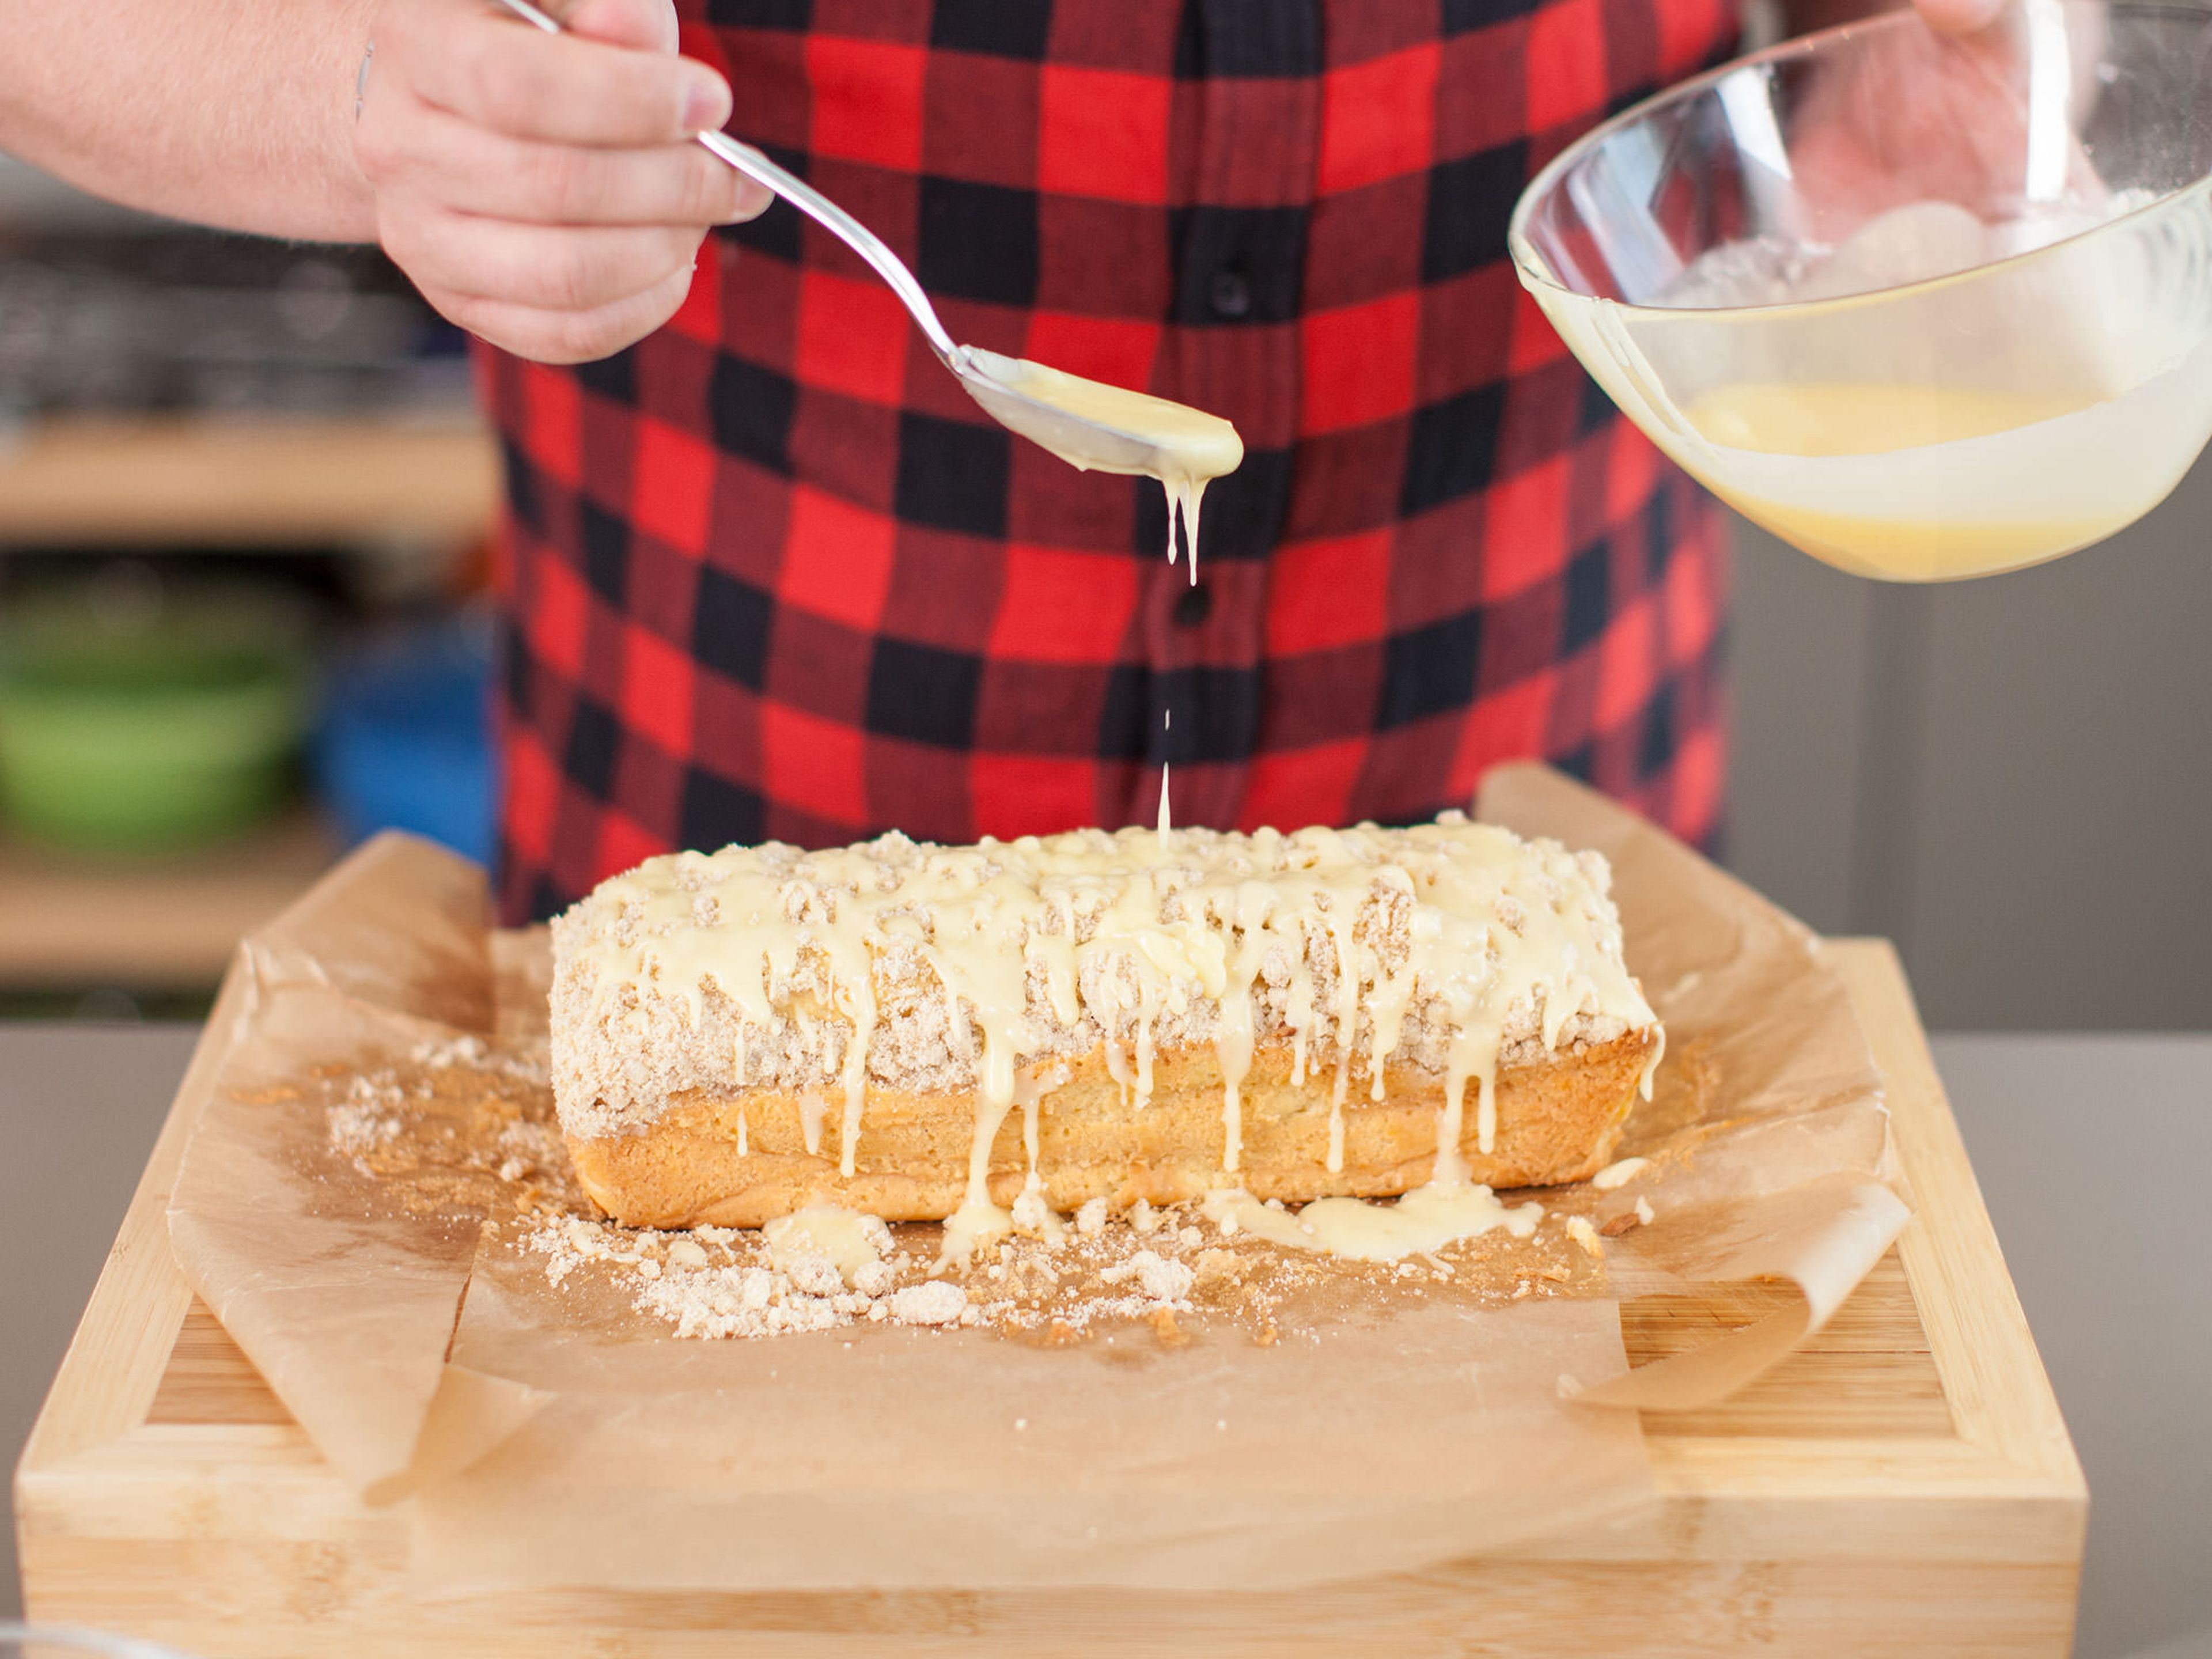 Kuchen aus dem Backofen nehmen und auf einem Kuchengitter abkühlen lassen. In der Zwischenzeit die restliche Butter schmelzen und für die Glasur mit dem Rest Eierlikör, Rum und Puderzucker vermischen. Glasur über den Kuchen geben.